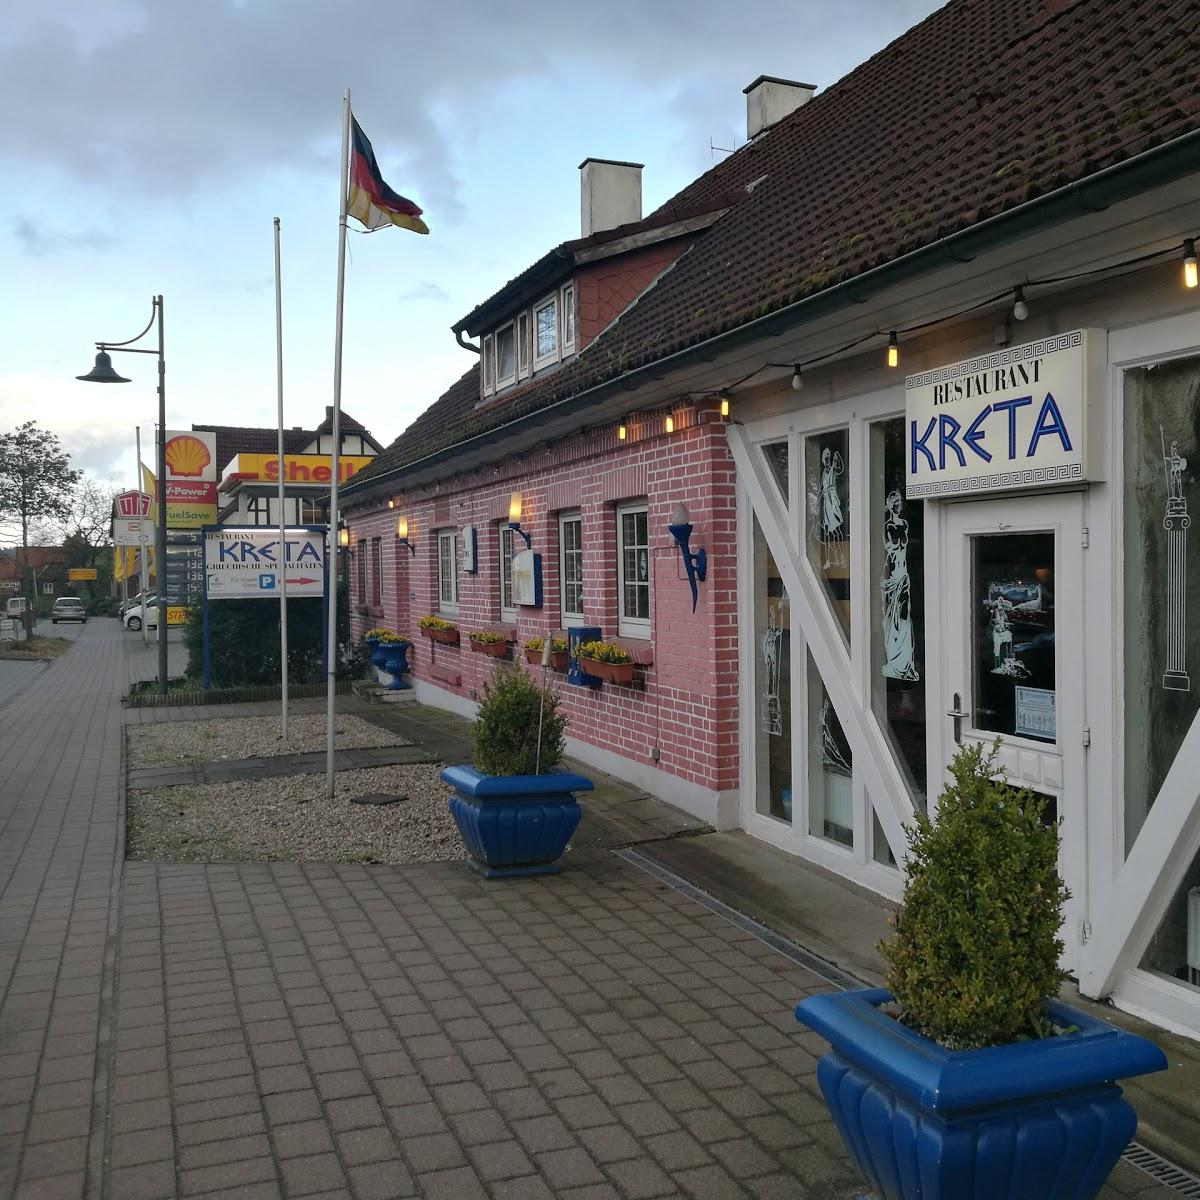 Restaurant "Restaurant Kreta" in Amelinghausen